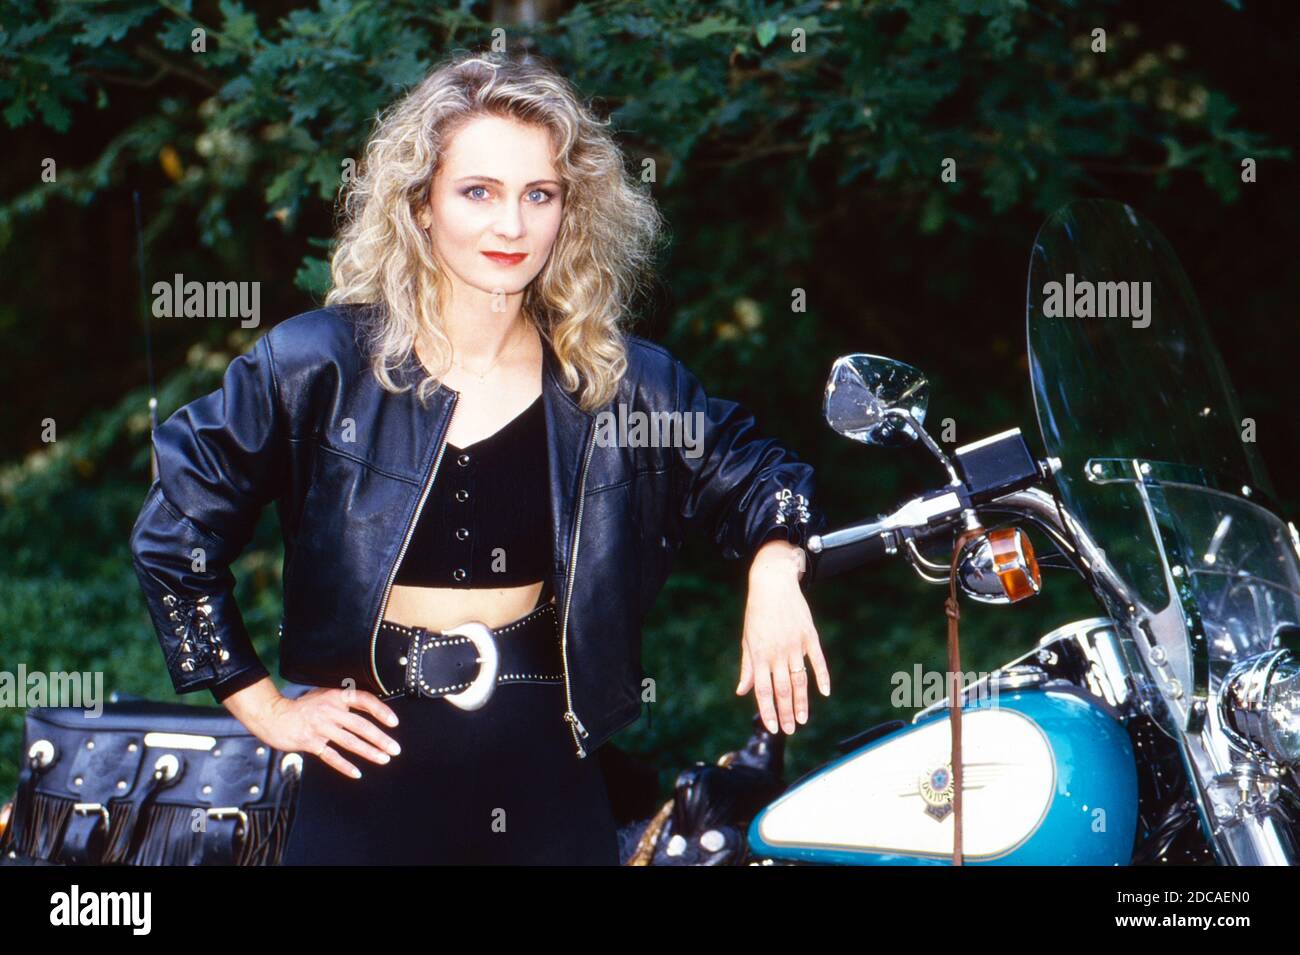 Schlagersängerin Nicole posiert neben einem Harley Davidson Motorrad, Deutschland um 1994. Stock Photo